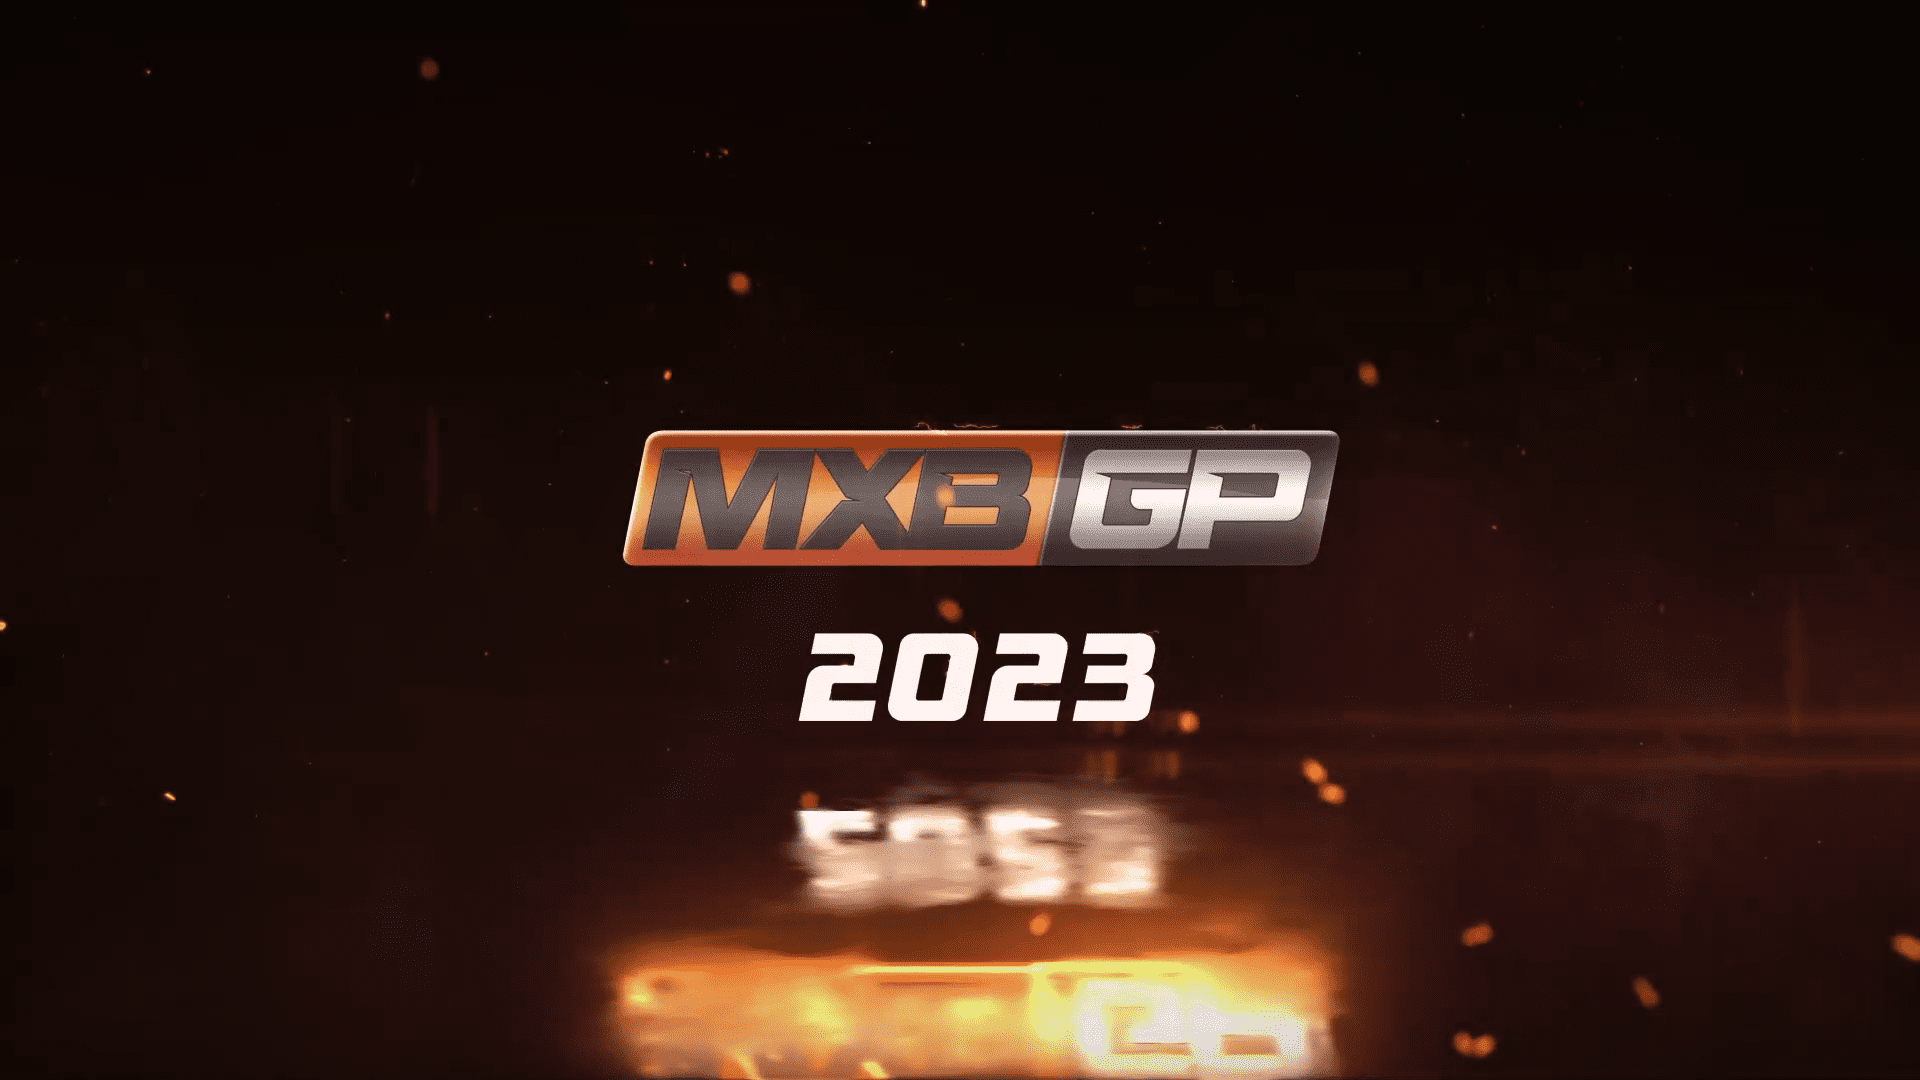 2023 MXBGP Announcement